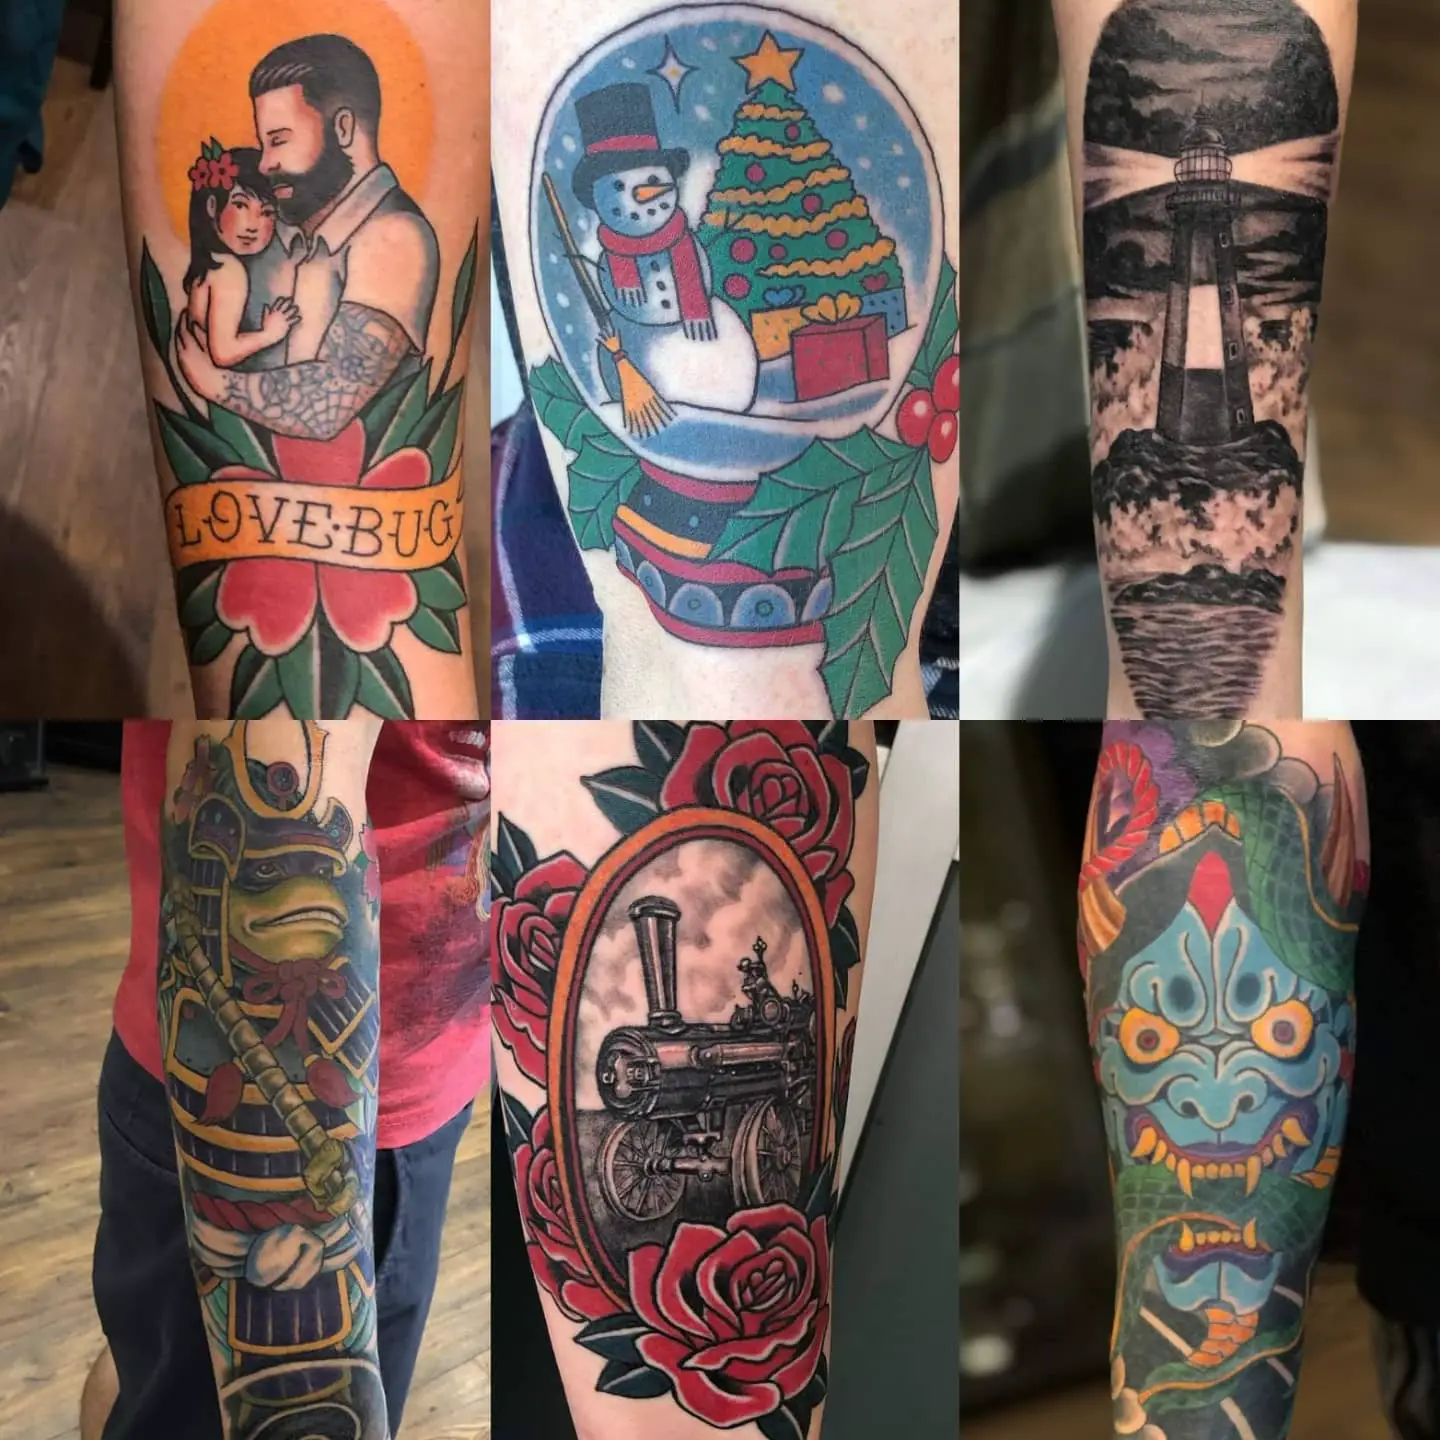 19 Most Renowned Tattoo Shops In Cincinnati With Award Winning Artists - Psycho Tats